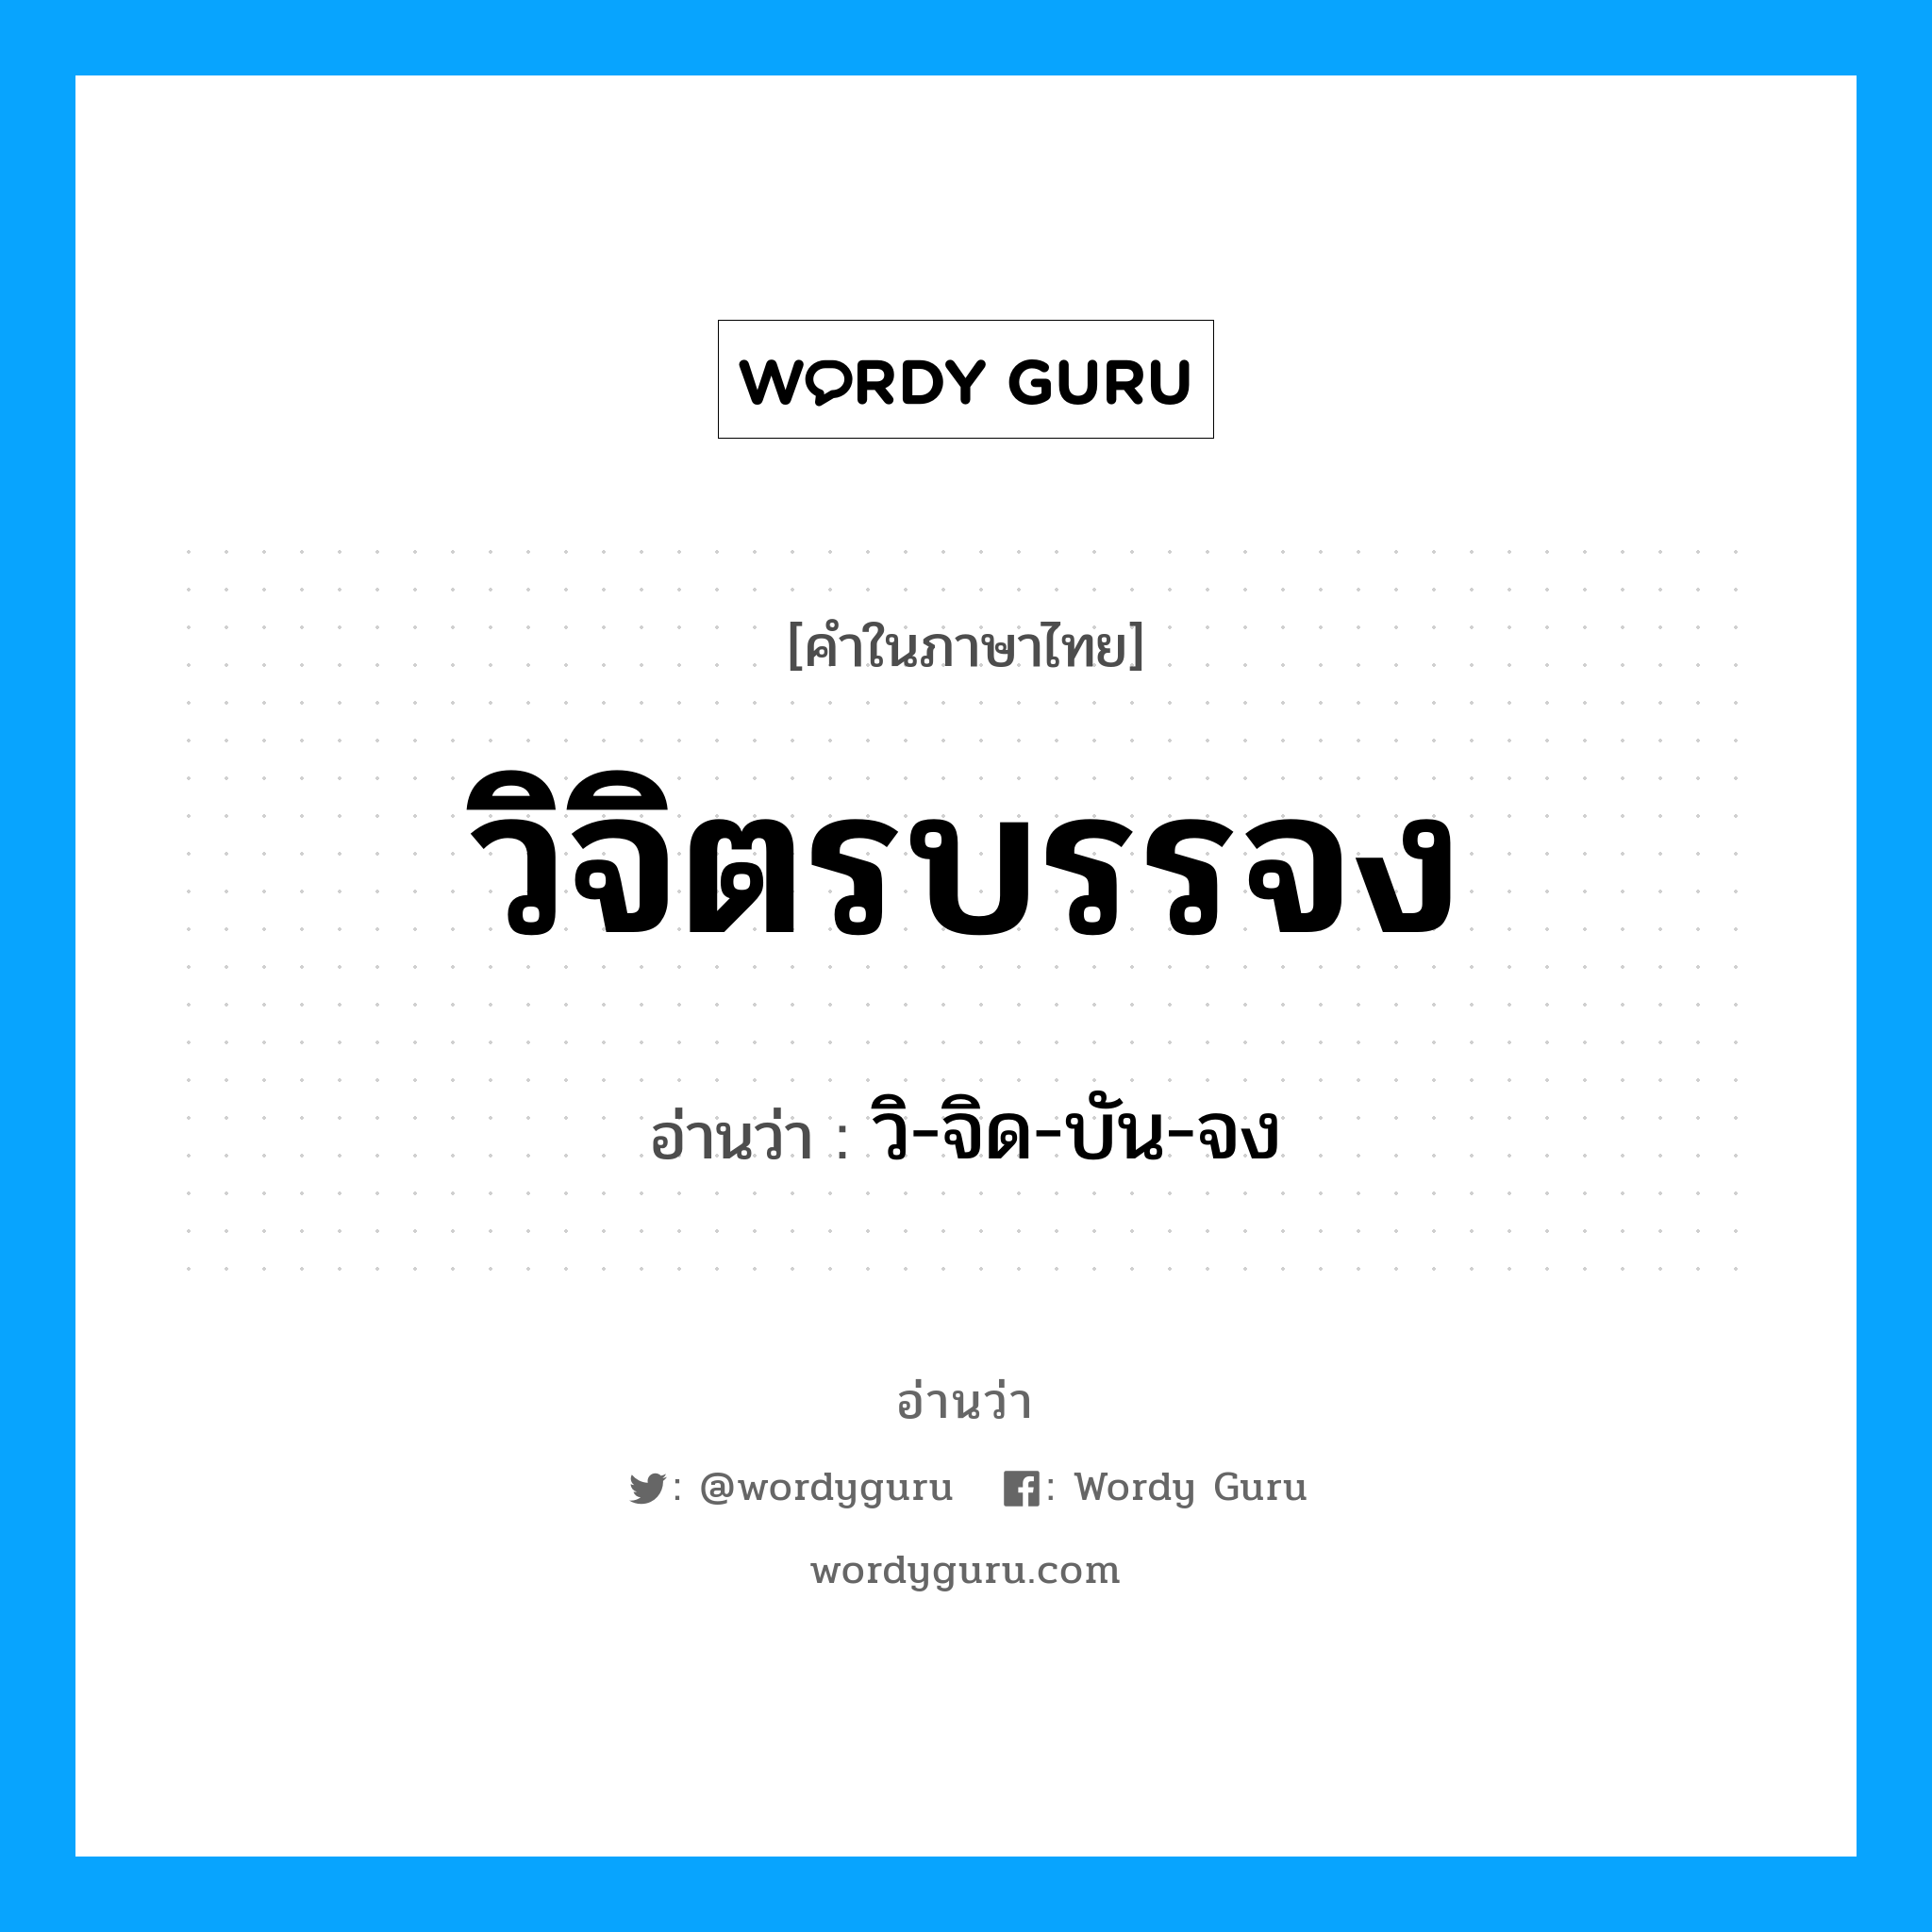 วิ-จิด-บัน-จง เป็นคำอ่านของคำไหน?, คำในภาษาไทย วิ-จิด-บัน-จง อ่านว่า วิจิตรบรรจง